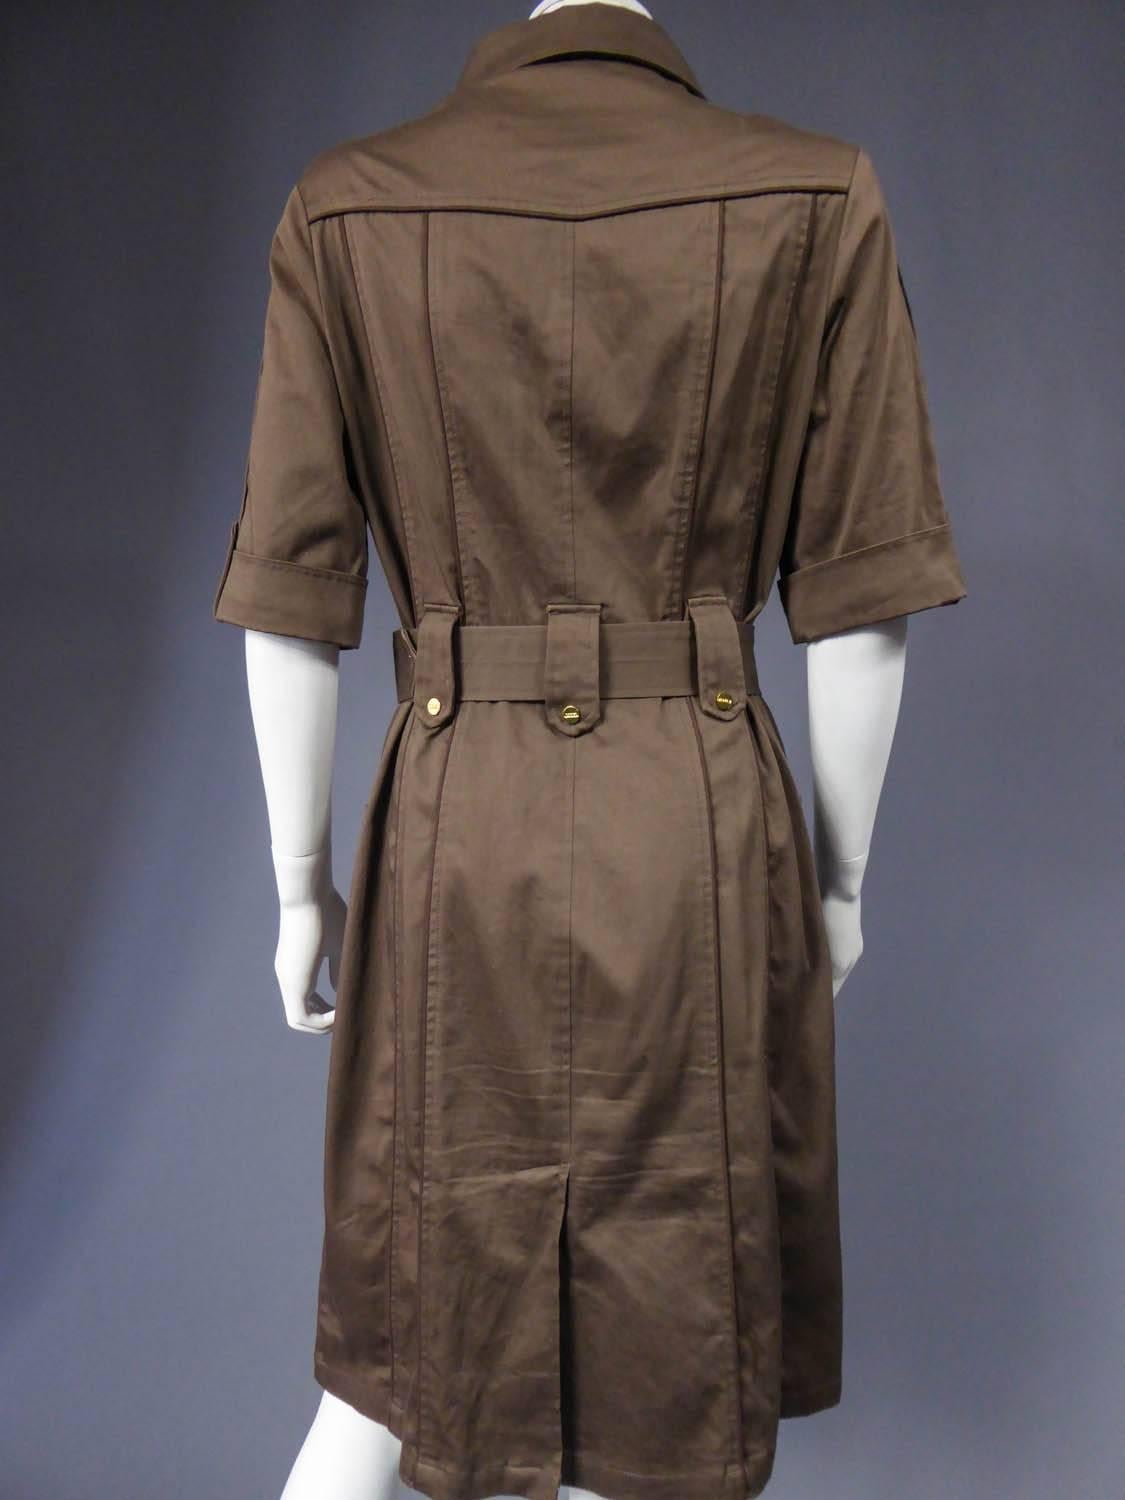 Sahararienne dress Rodier - Circa 1970 - 1980 6